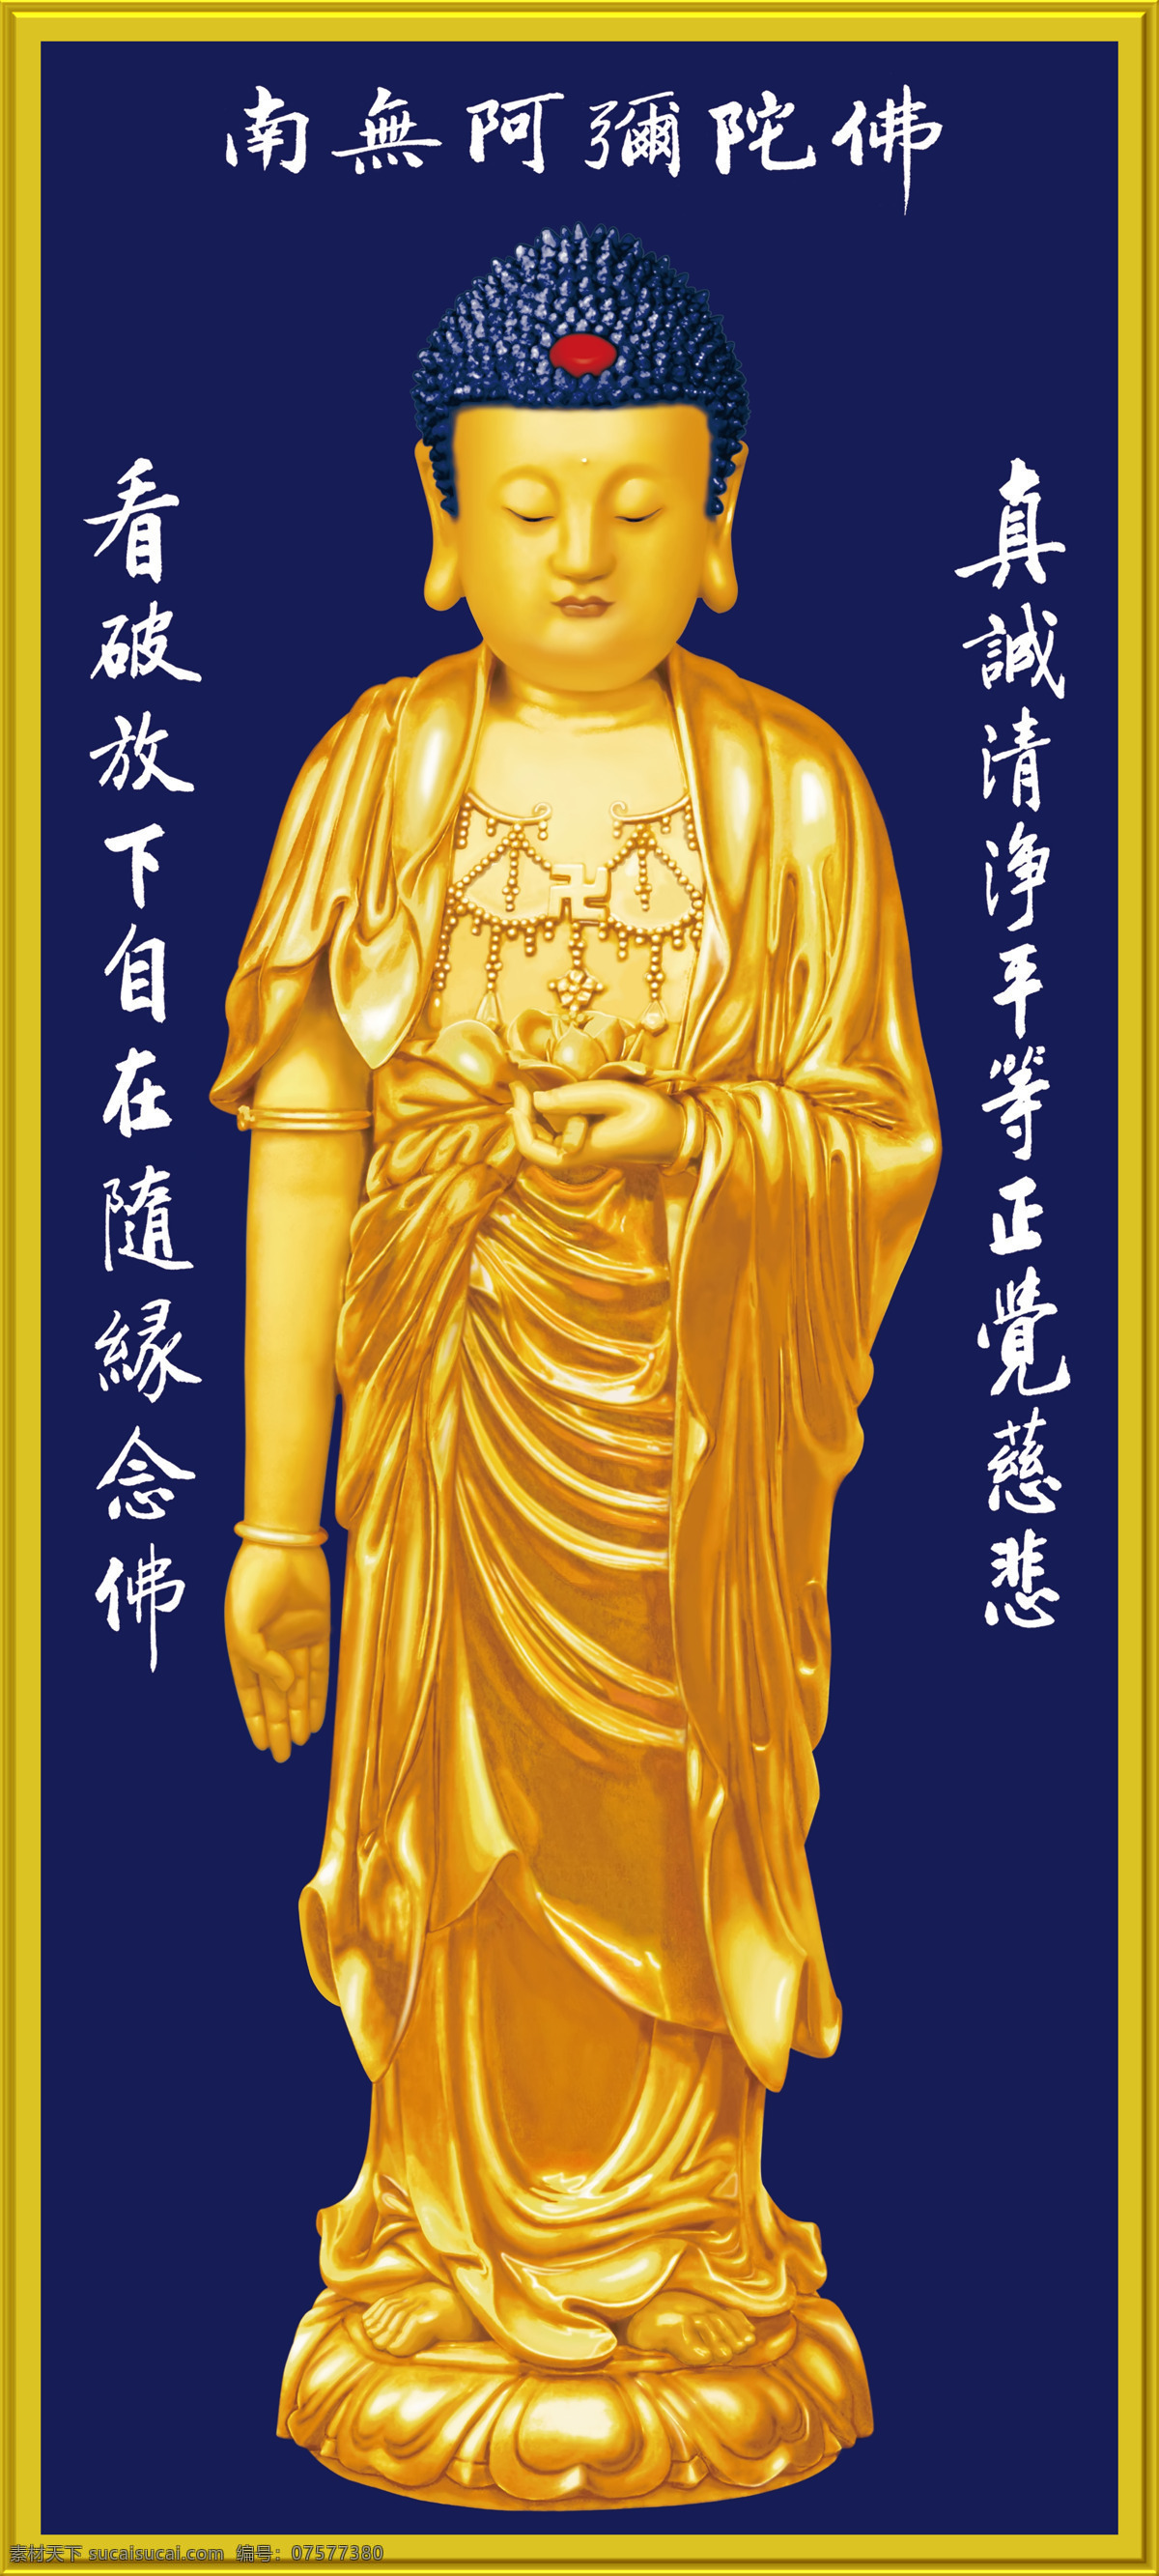 阿弥陀佛 超清立像 佛菩萨圣像 佛教雕塑绘画 雕像摄像 极乐世界接引 文化艺术 宗教信仰